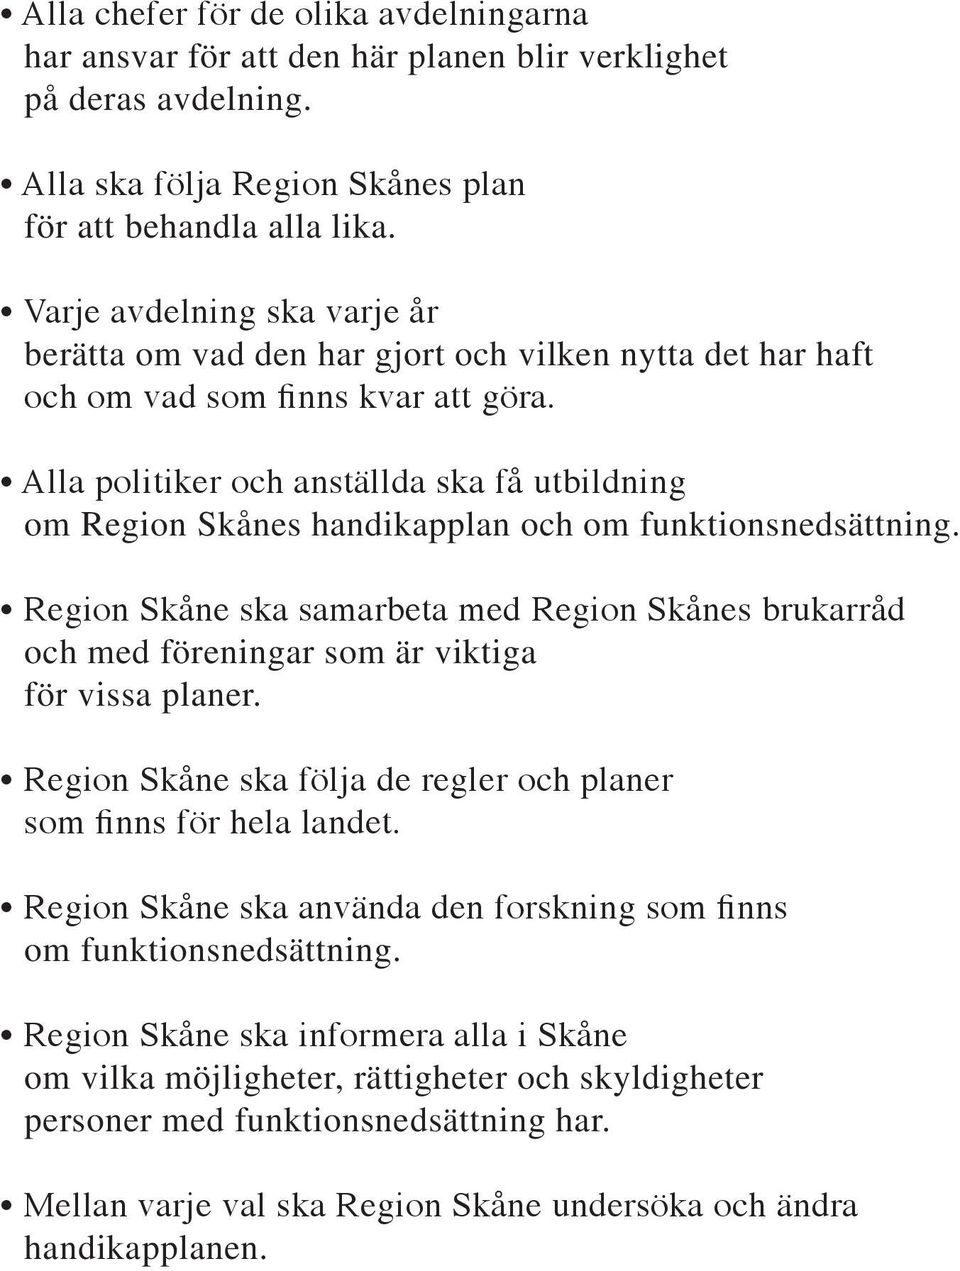 Alla politiker och anställda ska få utbildning om Region Skånes handikapplan och om funktionsnedsättning.